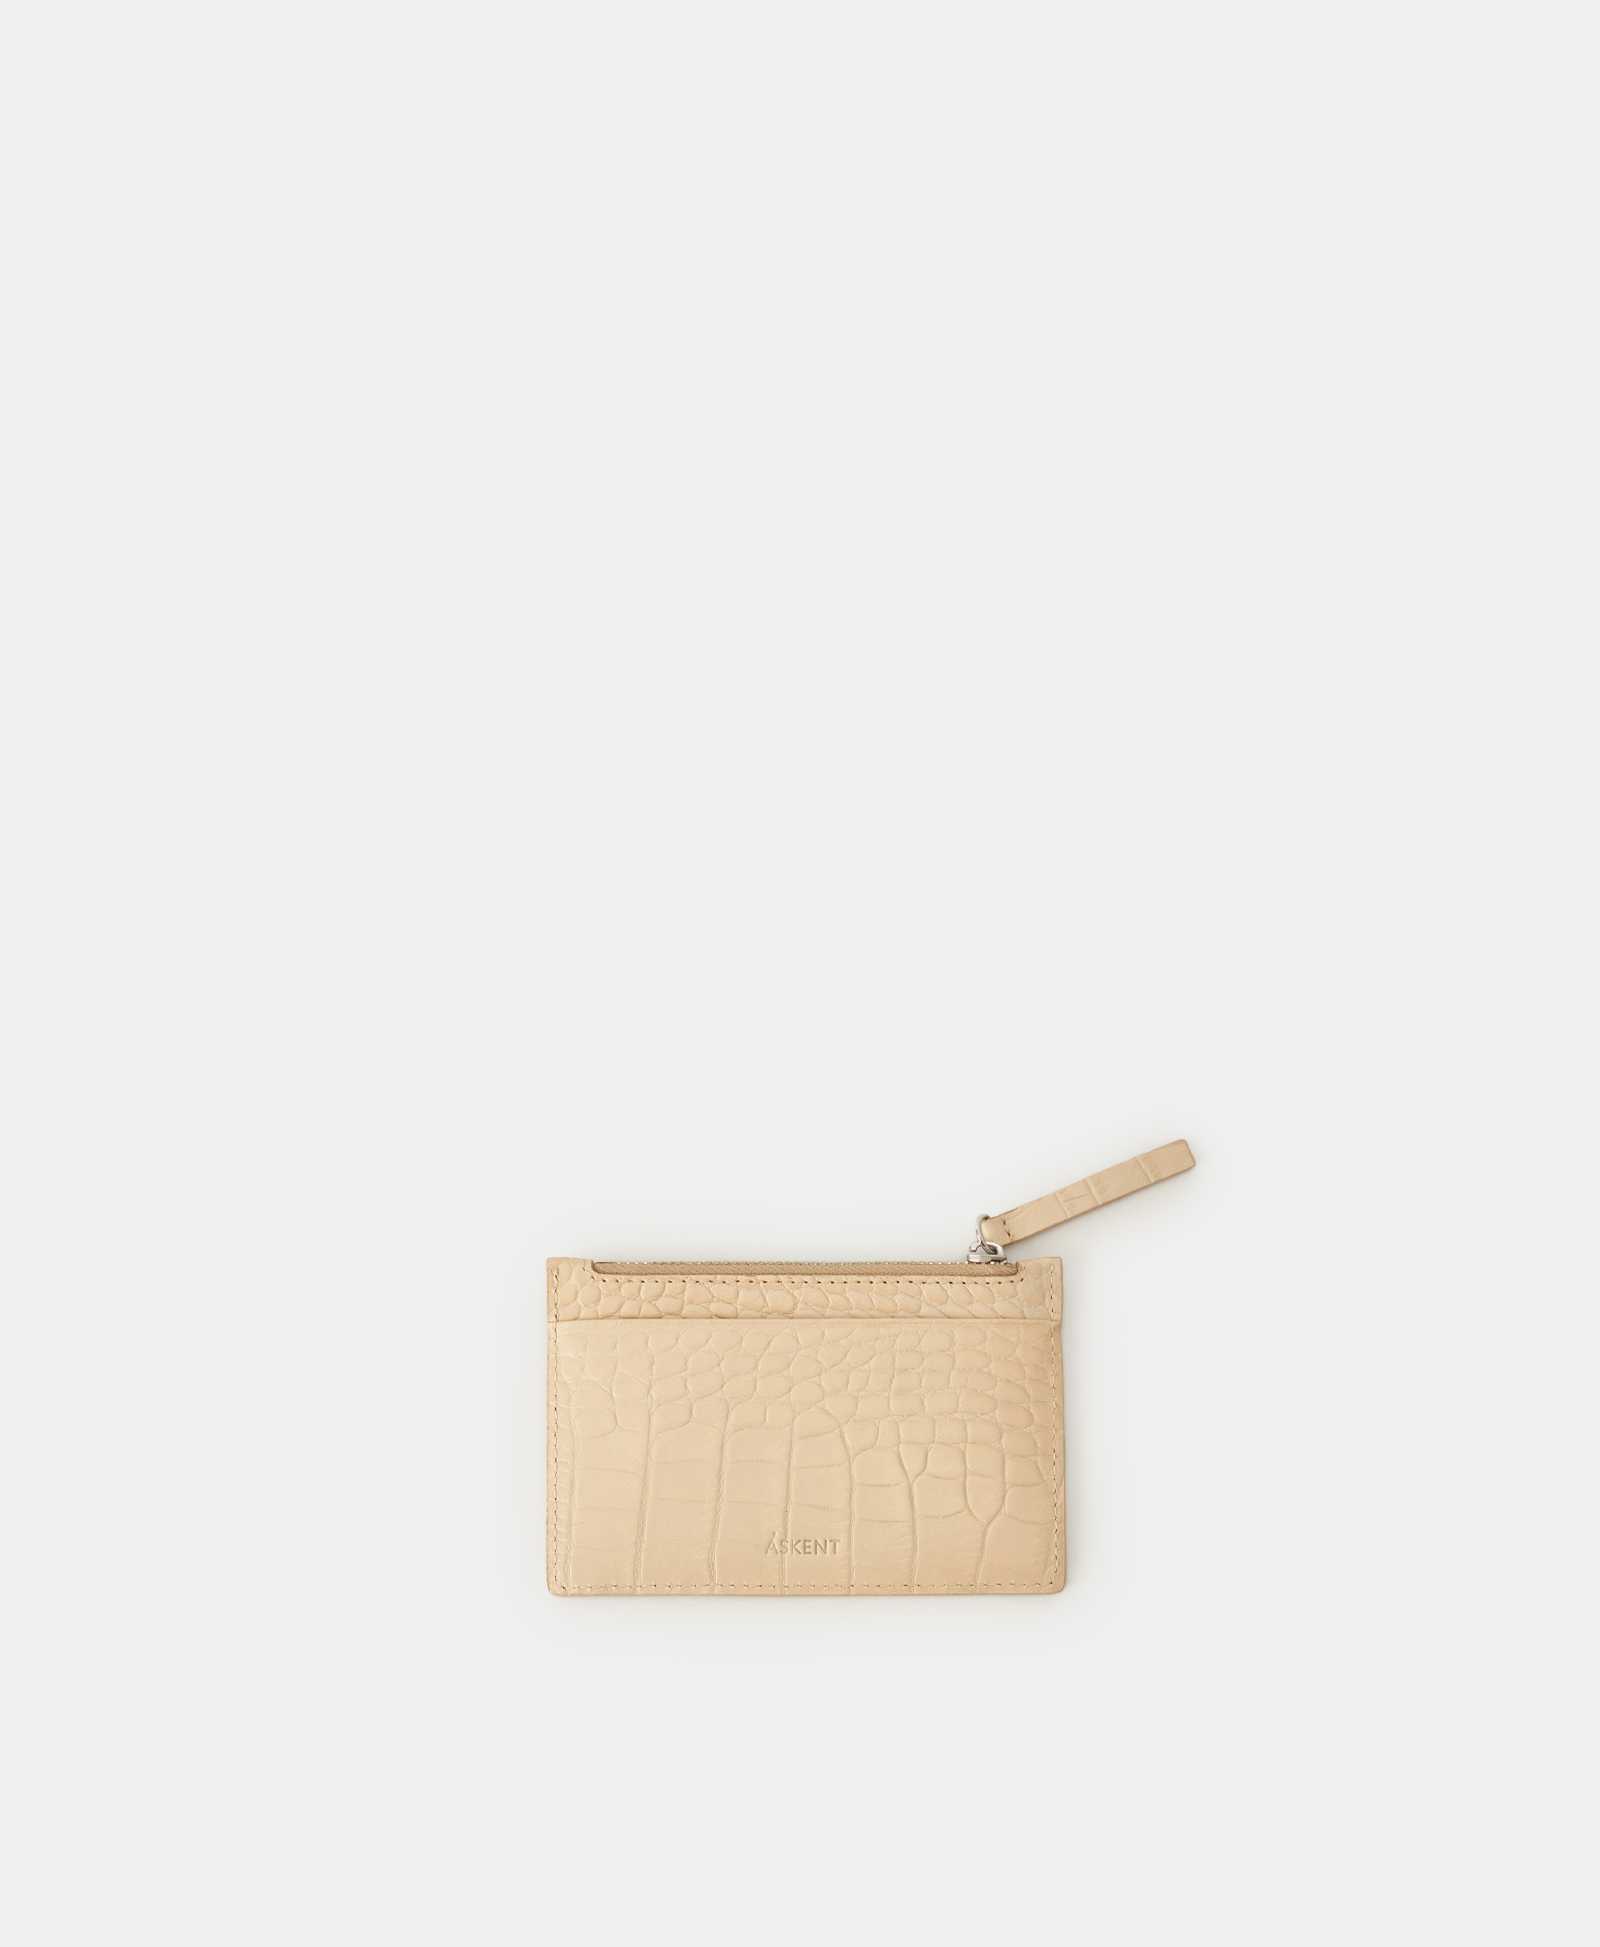 Функциональный кардхолдер мини кошелек bello тутти для женщин оригинальный маленький бумажник на защелке из натуральной овечьей кожи кредитница на молнии